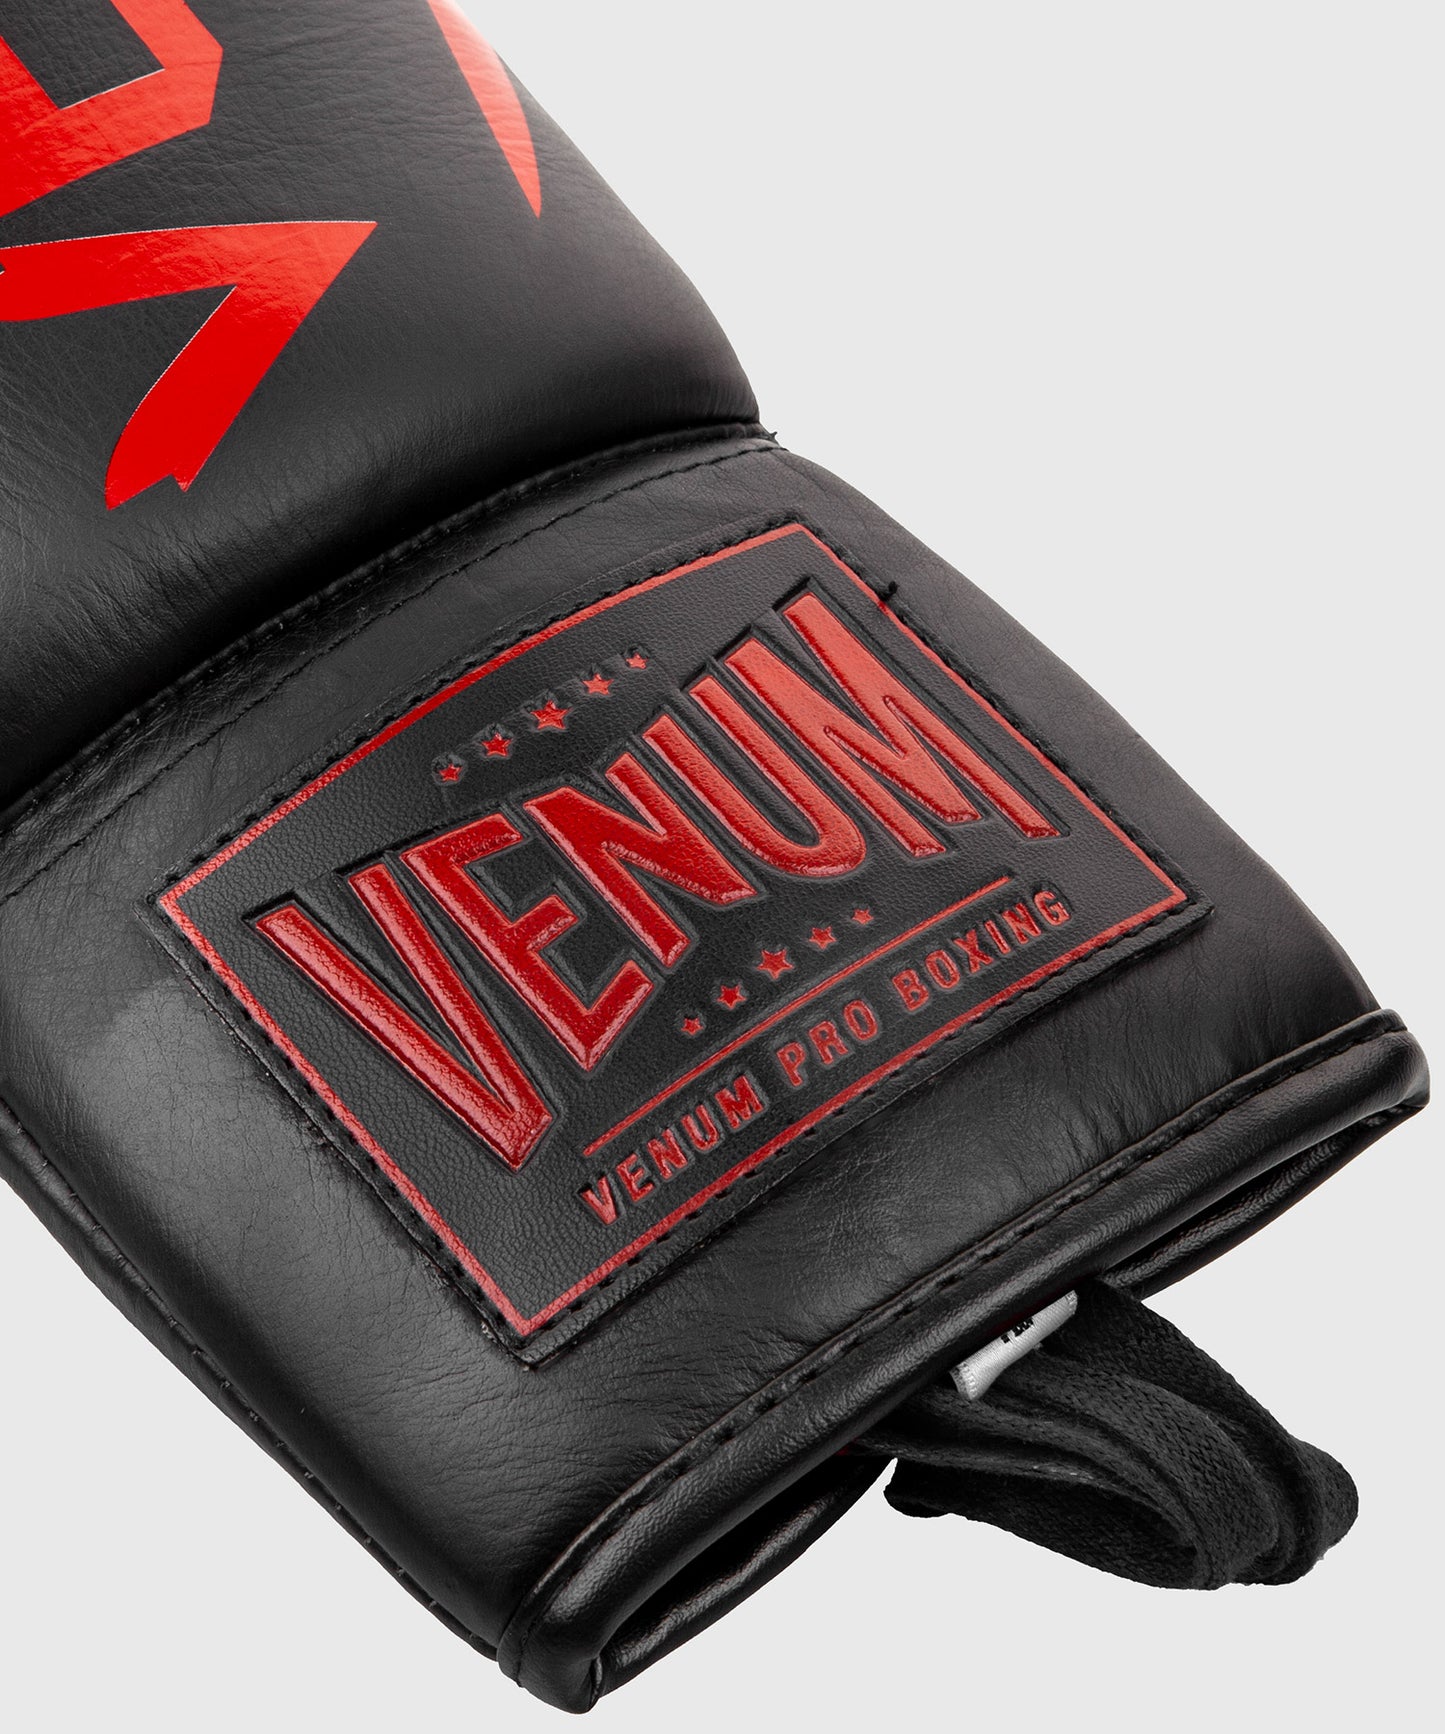 Gants de boxe pro Venum Hammer - Avec Lacets - Gants de boxe Pro